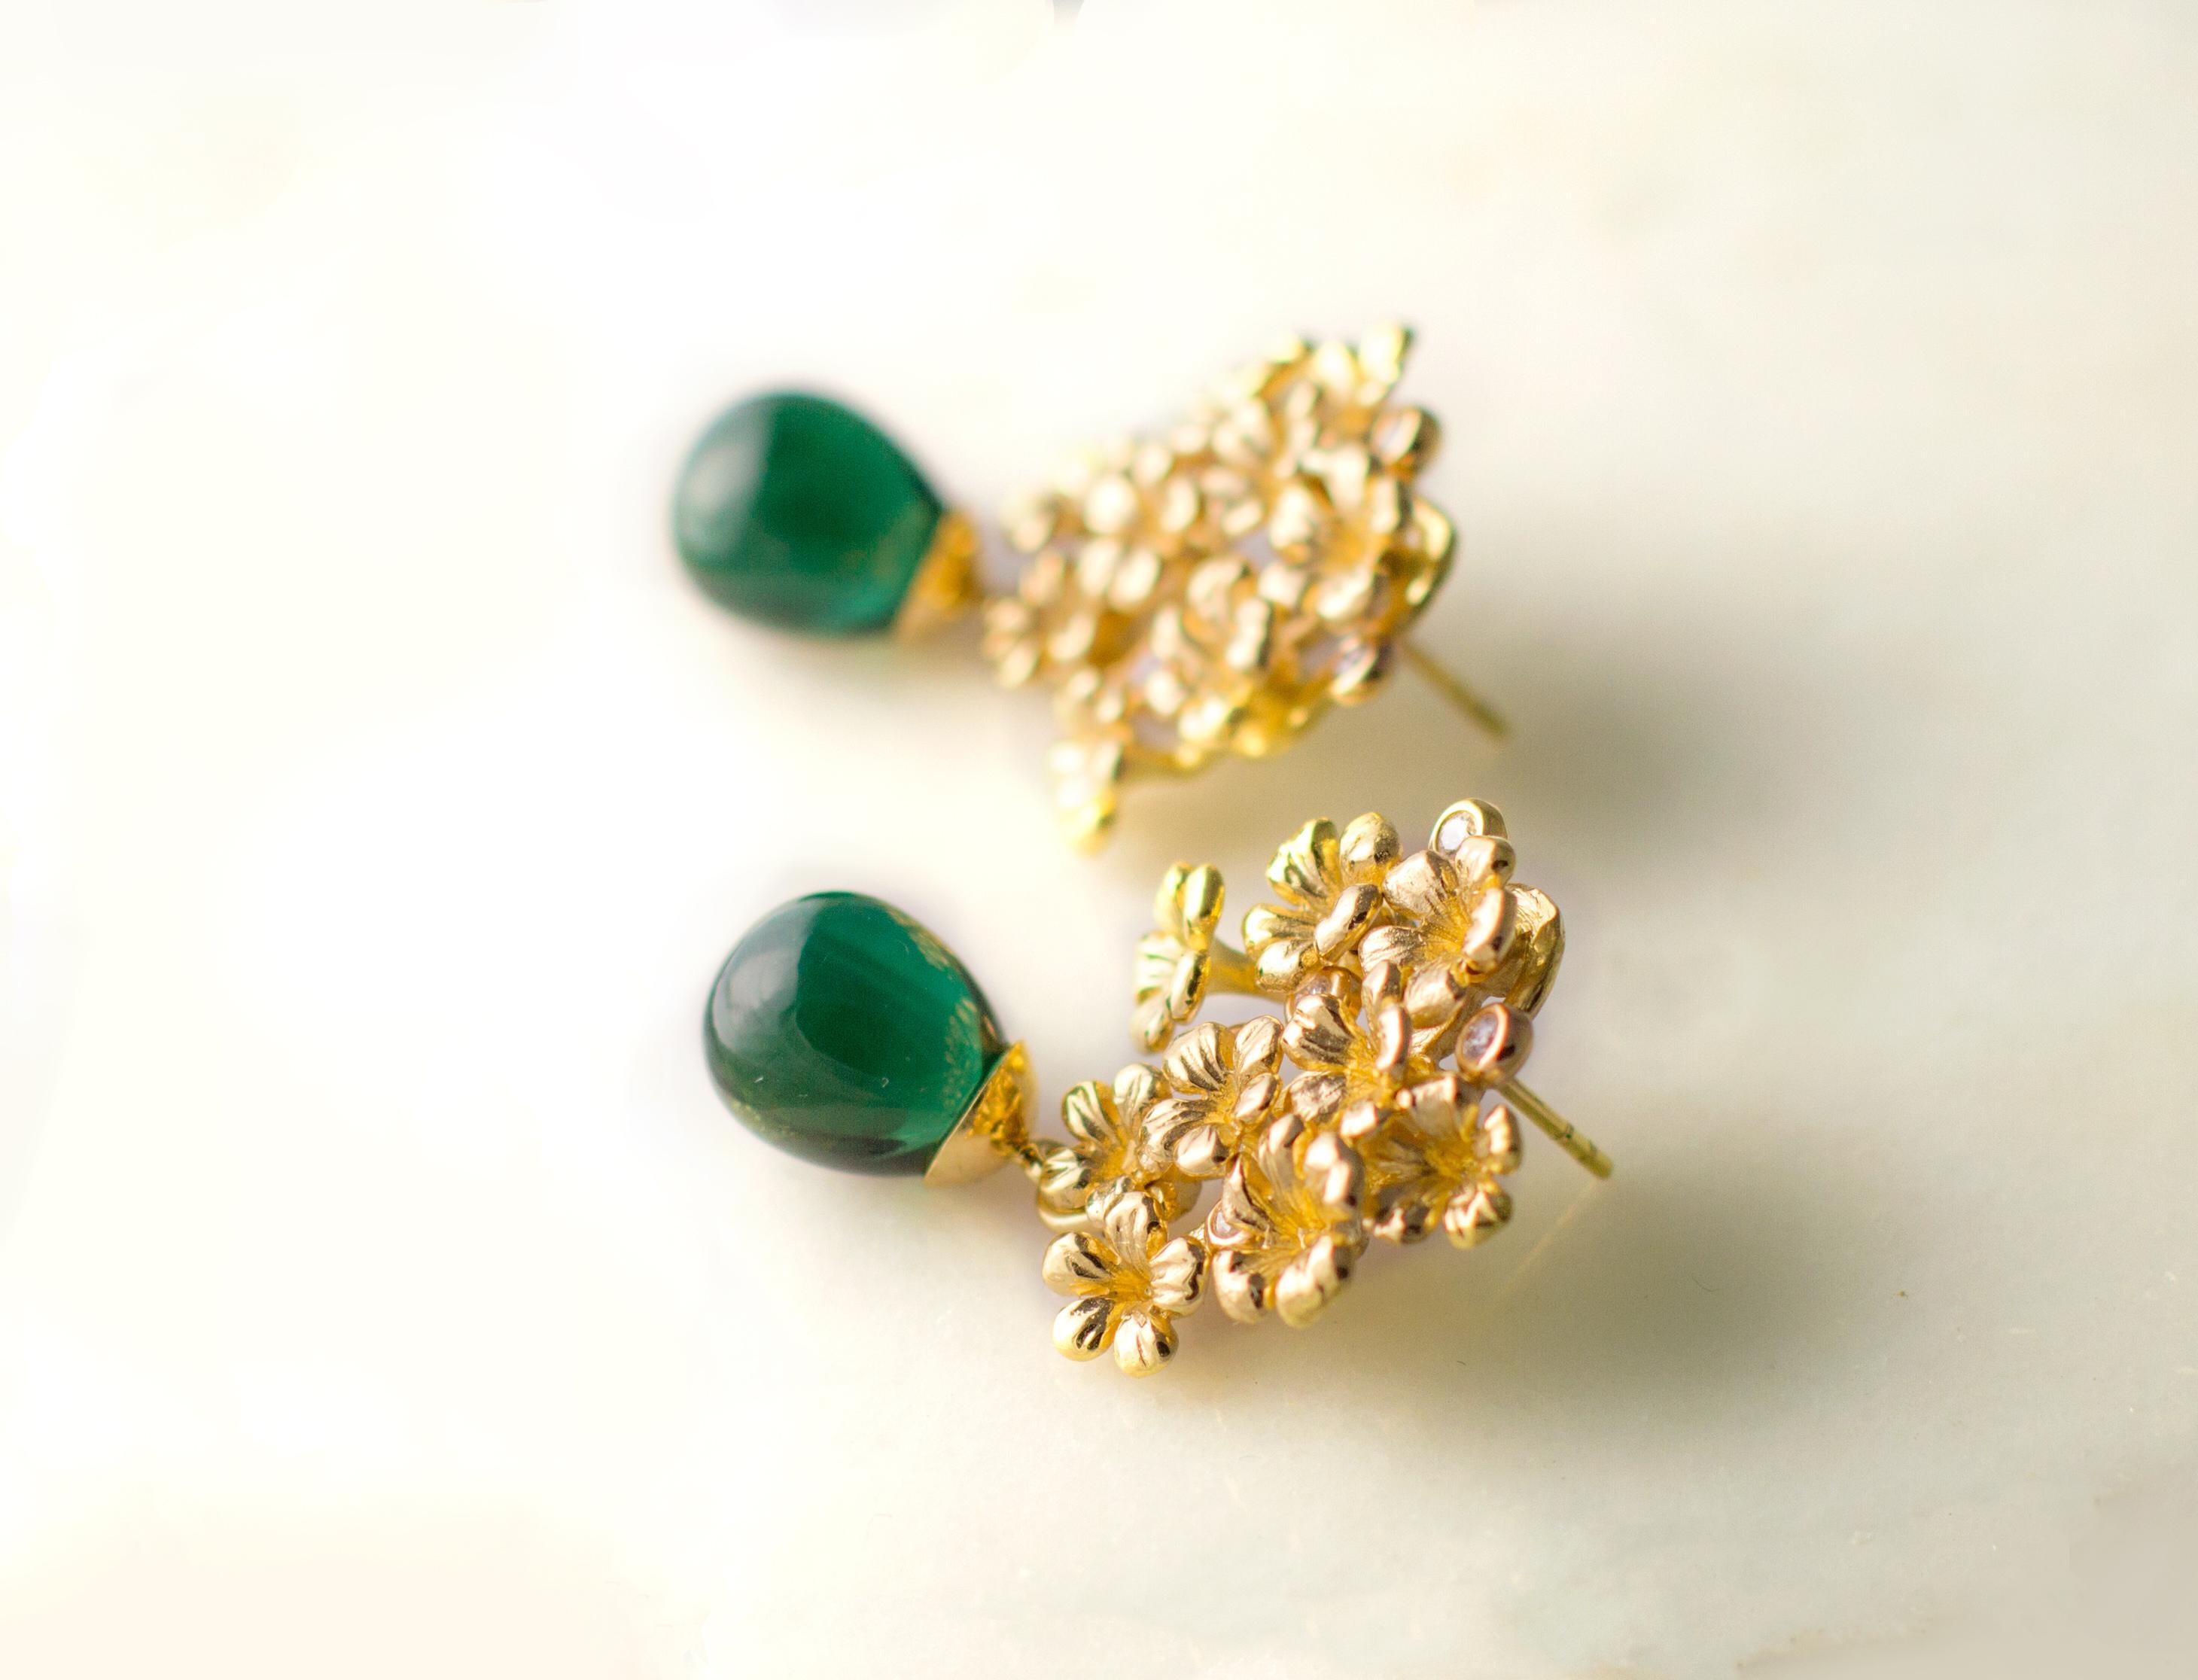 Ces boucles d'oreilles cocktail Plum Flowers avec cabochons de tourmaline verte sont réalisées en or rose 14 carats et ornées de 10 diamants ronds. Cette pièce fait partie d'une collection de bijoux contemporains qui a été examinée par Vogue S en